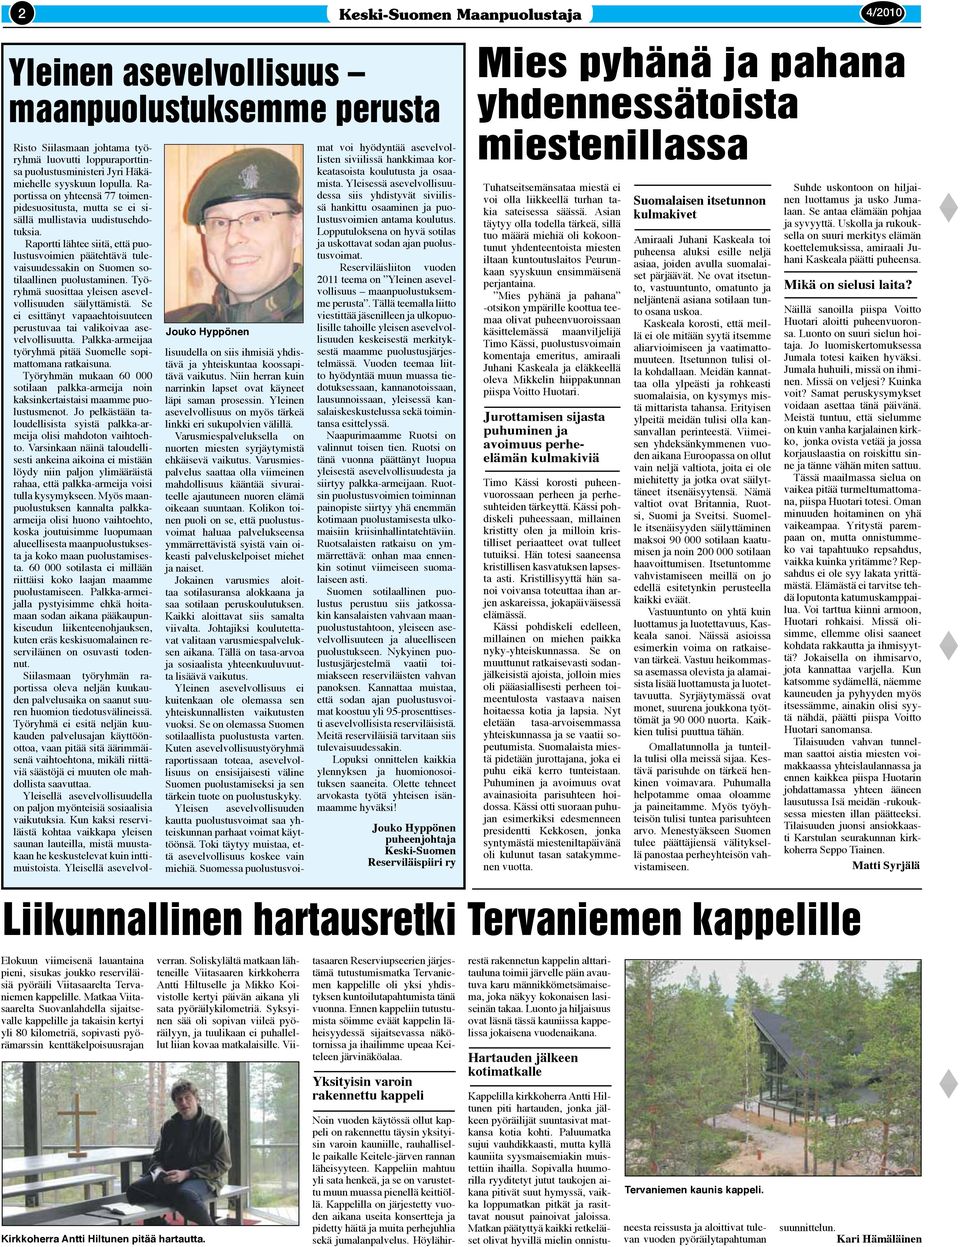 Raportti lähtee siitä, että puolustusvoimien päätehtävä tulevaisuudessakin on Suomen sotilaallinen puolustaminen. Työryhmä suosittaa yleisen asevelvollisuuden säilyttämistä.